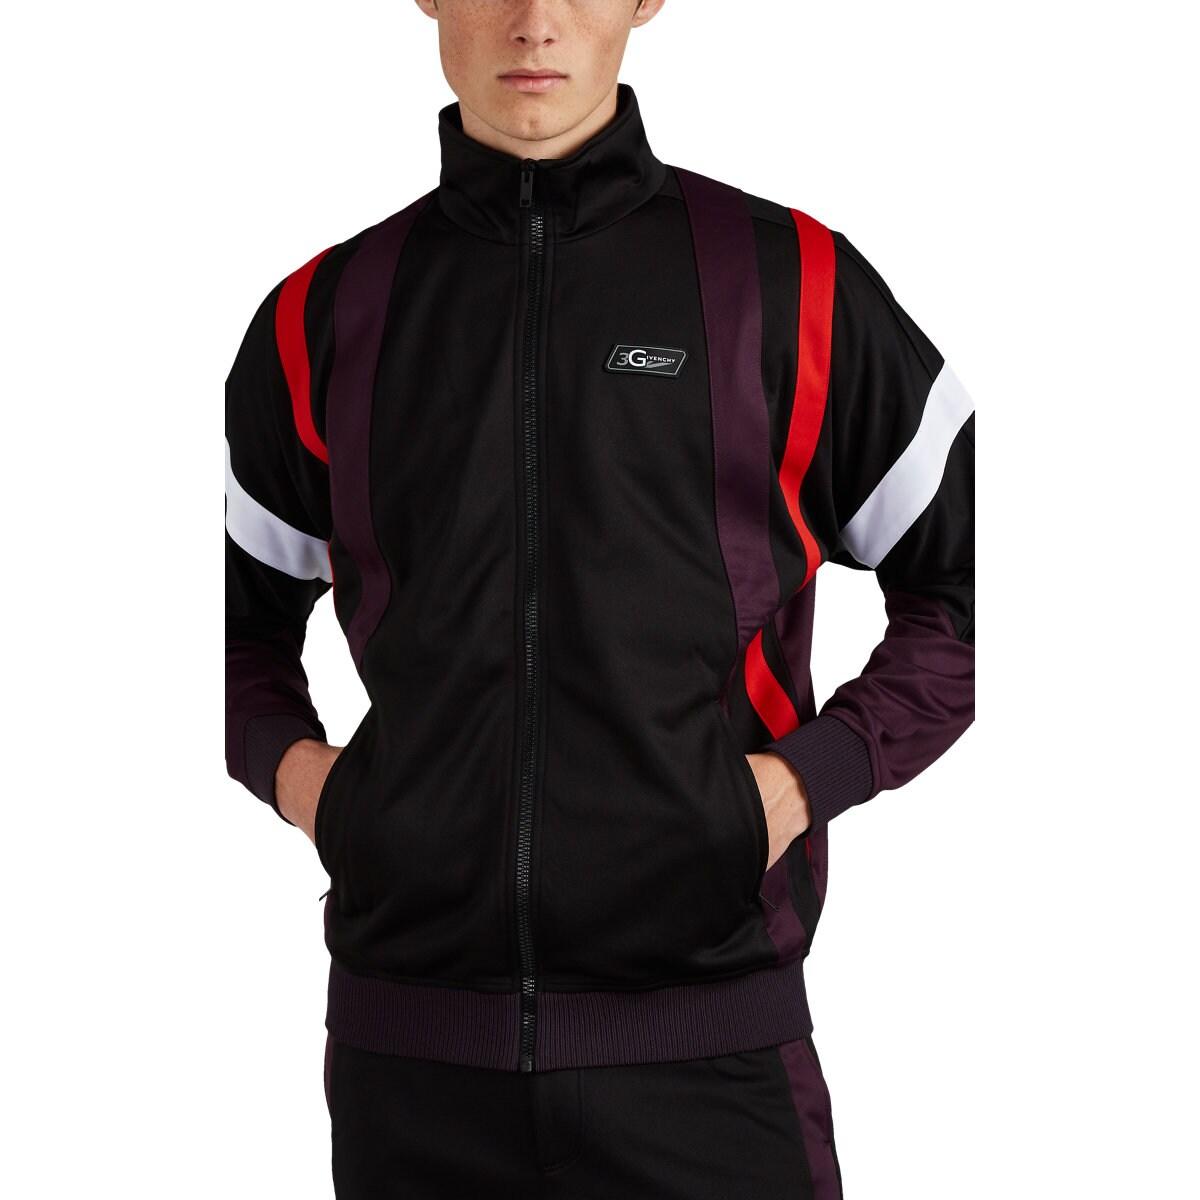 Givenchy 3 Logo Fleece Track Jacket in Black for Men - Lyst